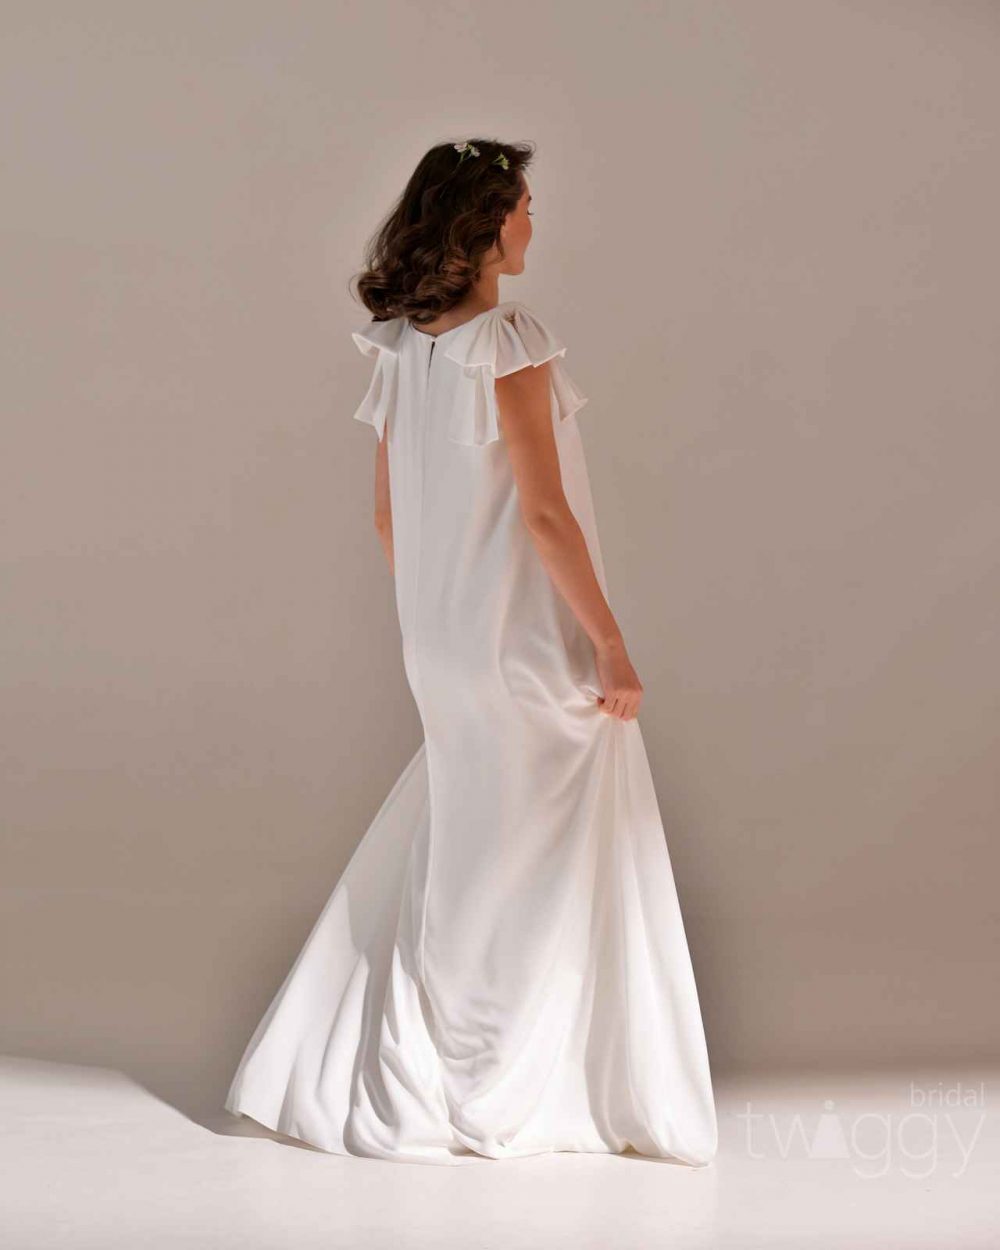 Свадебное платье Twiggy Bridal Лея